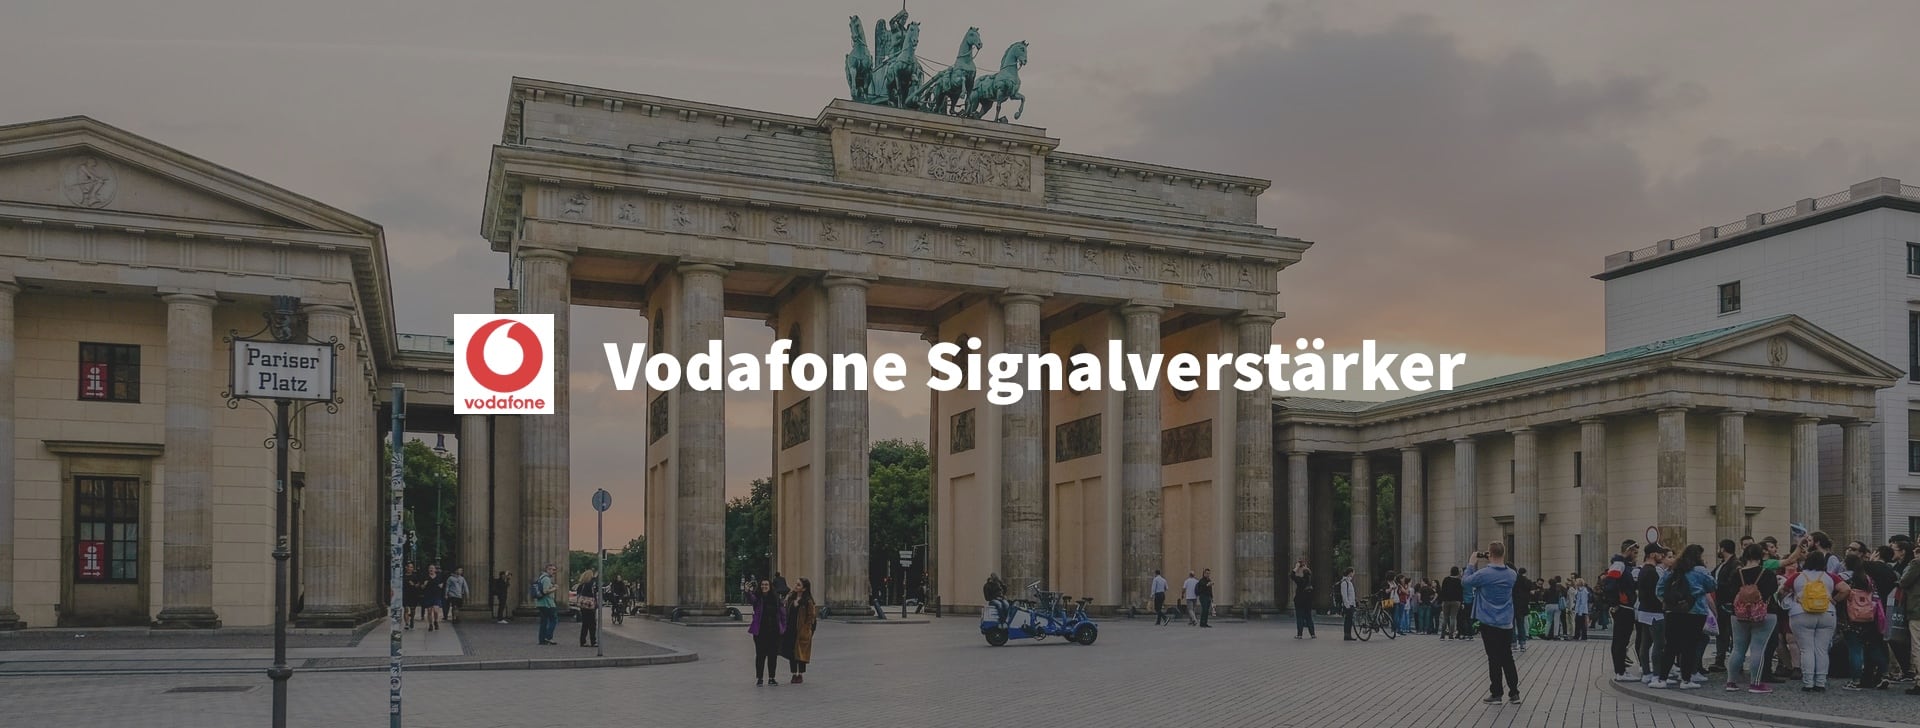 Vodafone Signalverstärker